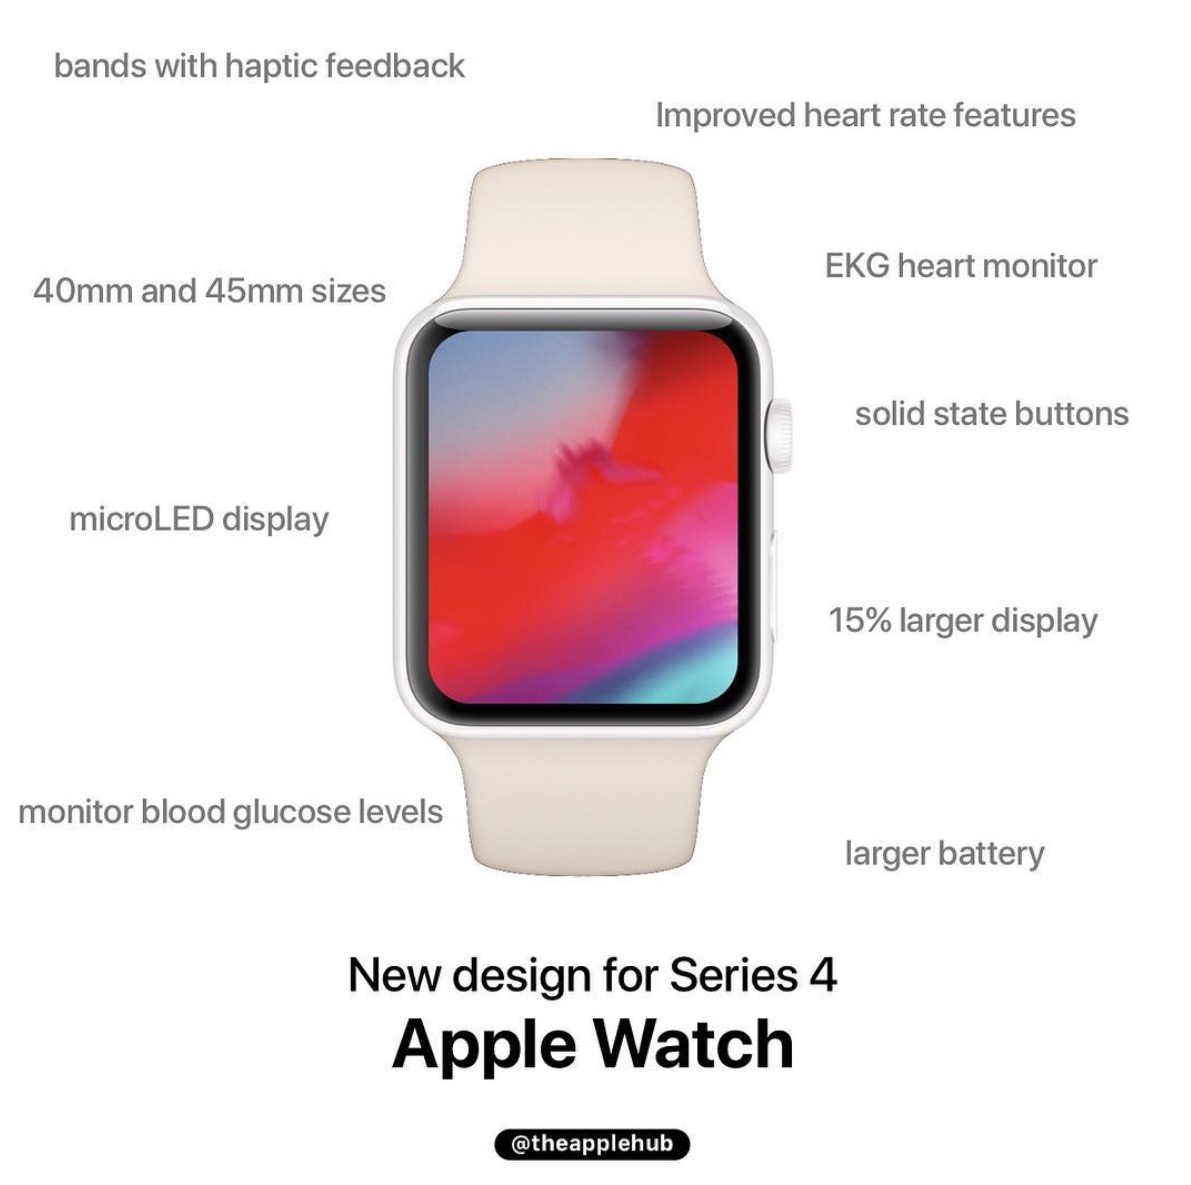 2018年 新型Apple Watch。Apple Watch series4 は新型iPhoneと同じく9月23日発表。